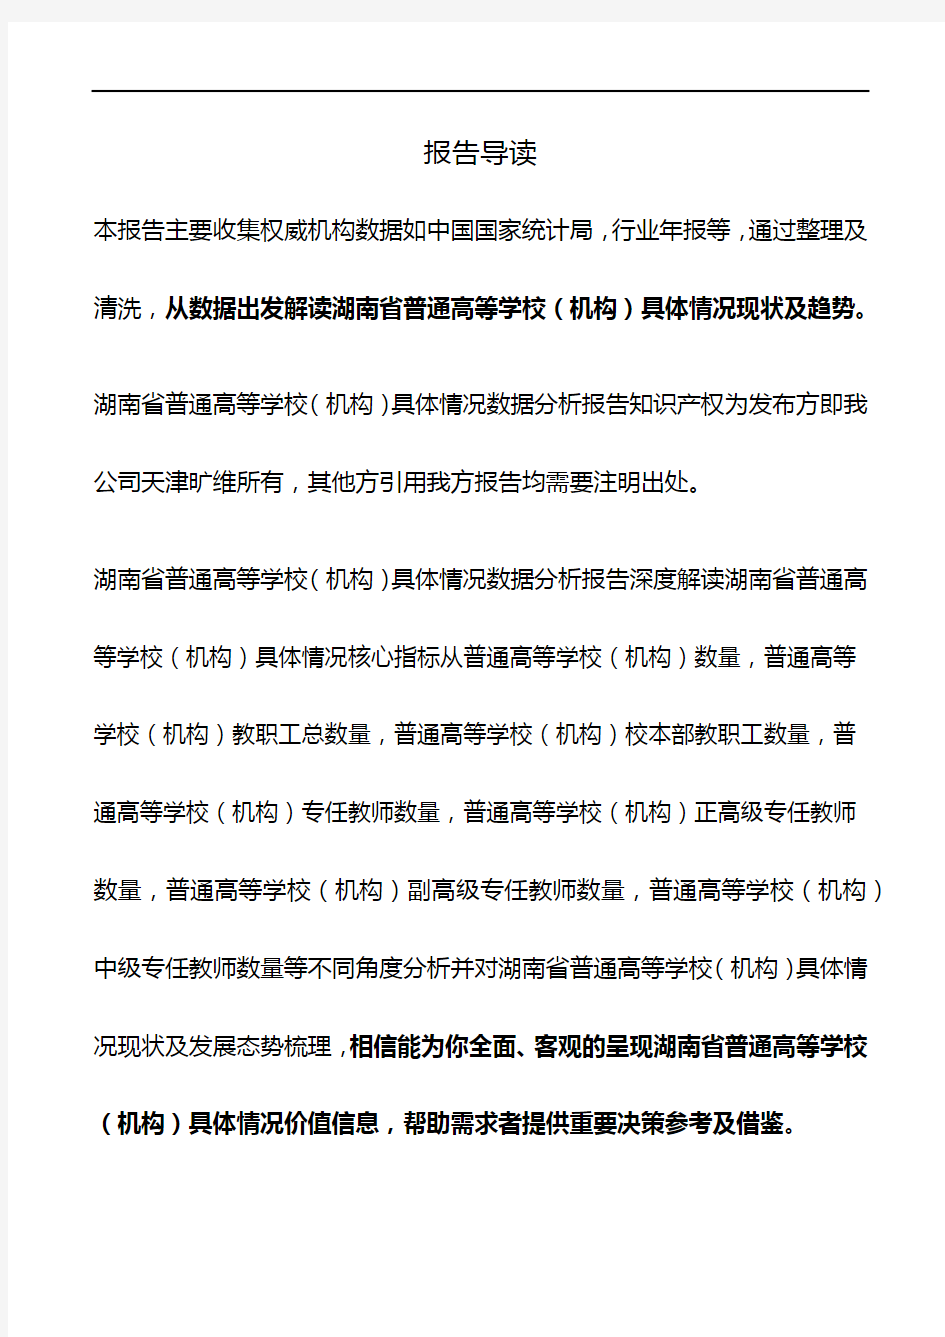 湖南省普通高等学校(机构)具体情况3年数据分析报告2019版